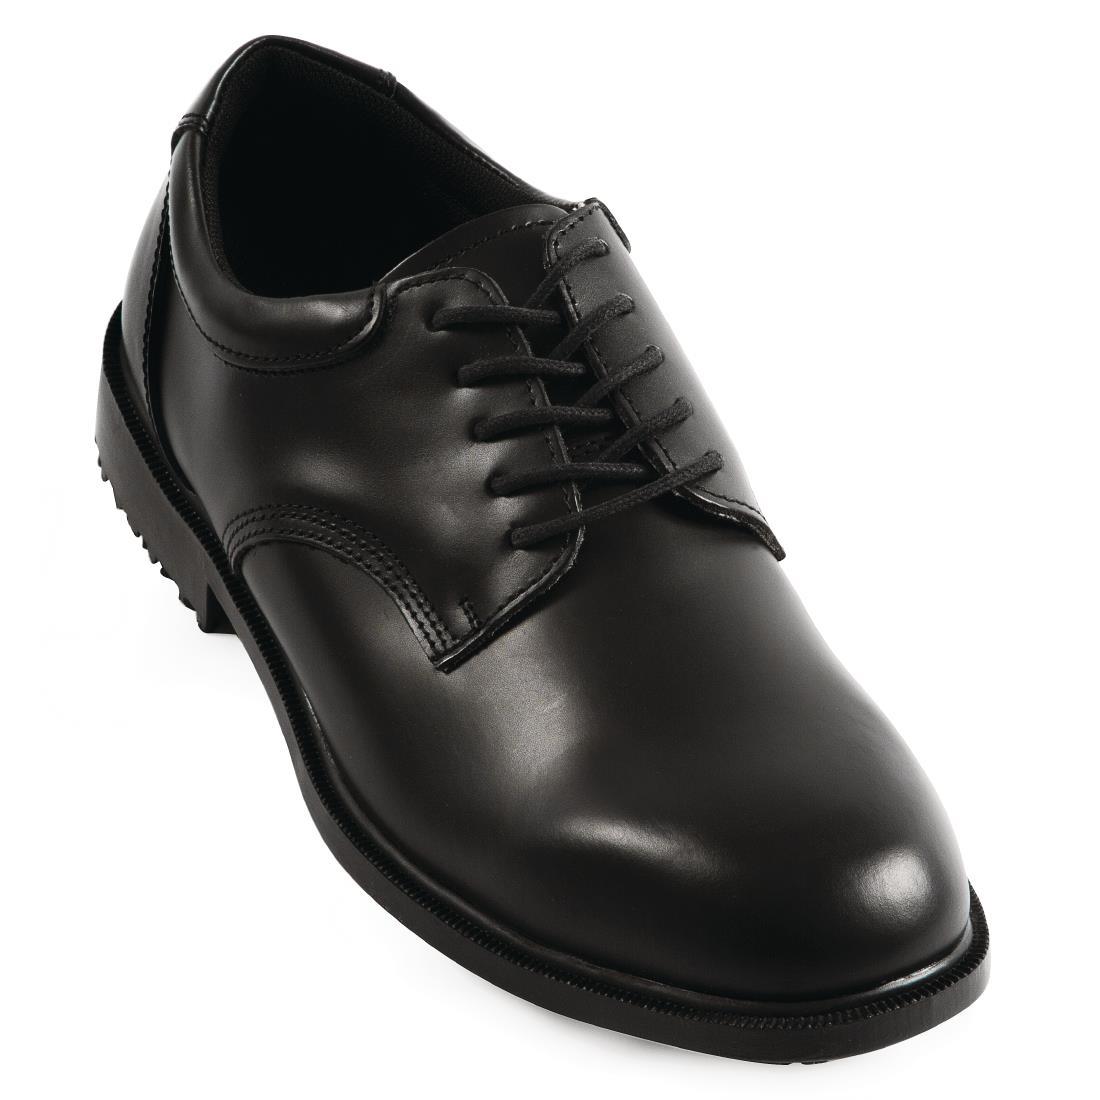 Shoes For Crews Mens Dress Shoe Size 45 - B110-45  - 1